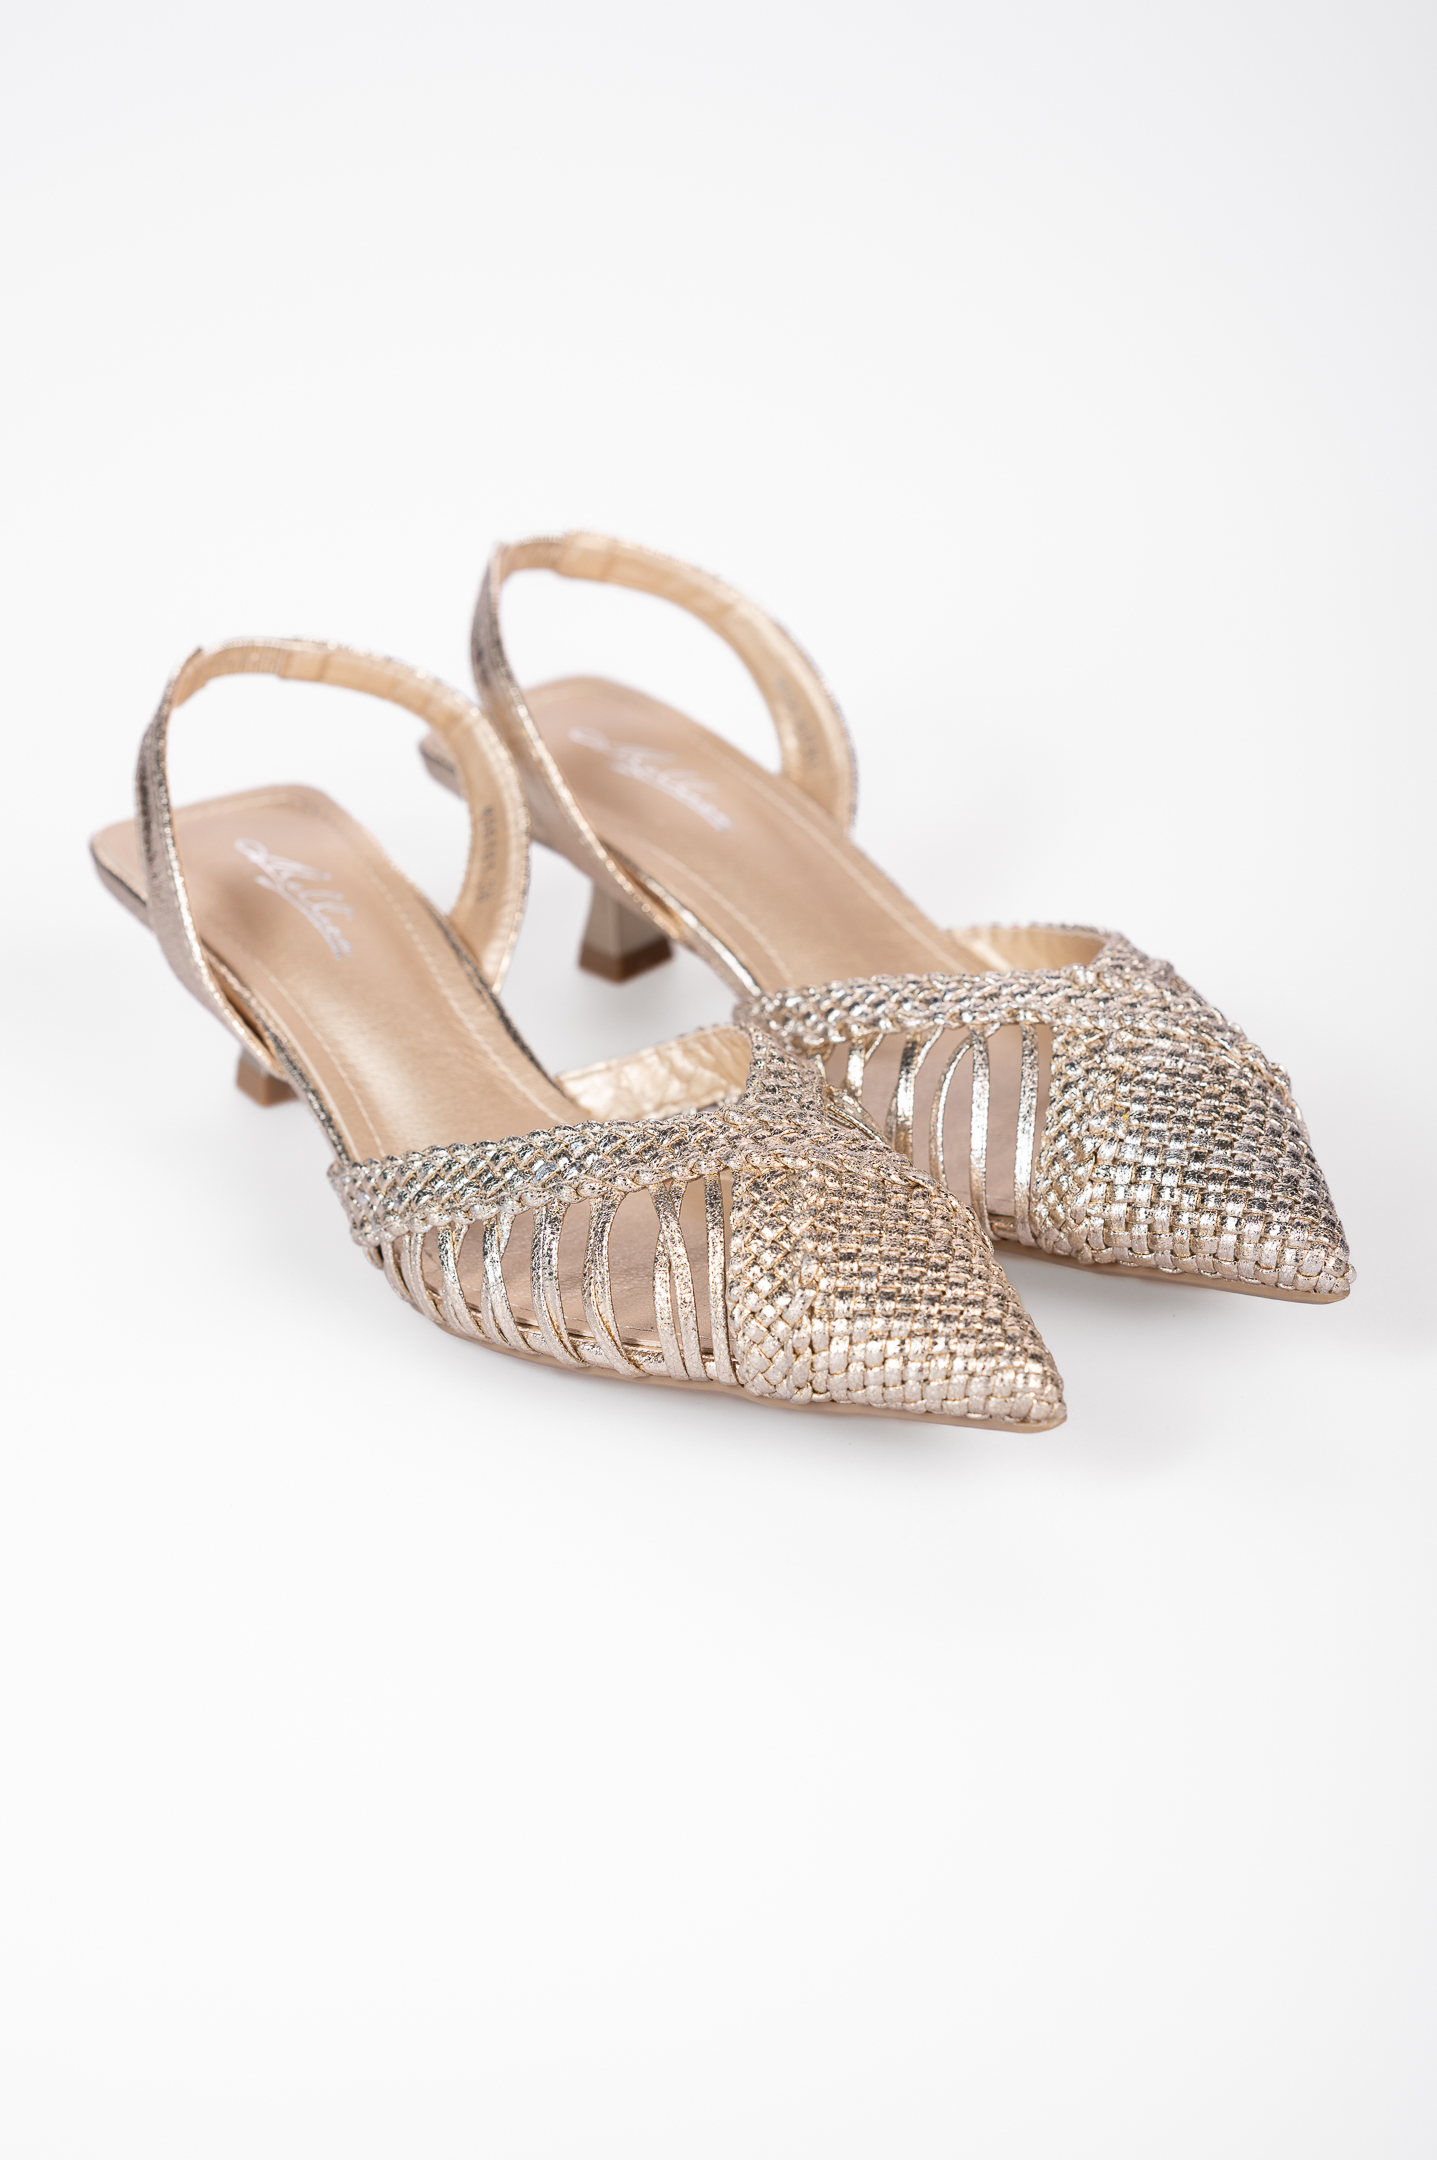 Χαμηλές open heel μυτερές γόβες με πλεκτό σχέδιο - Χρυσό Παπούτσια > Γόβες